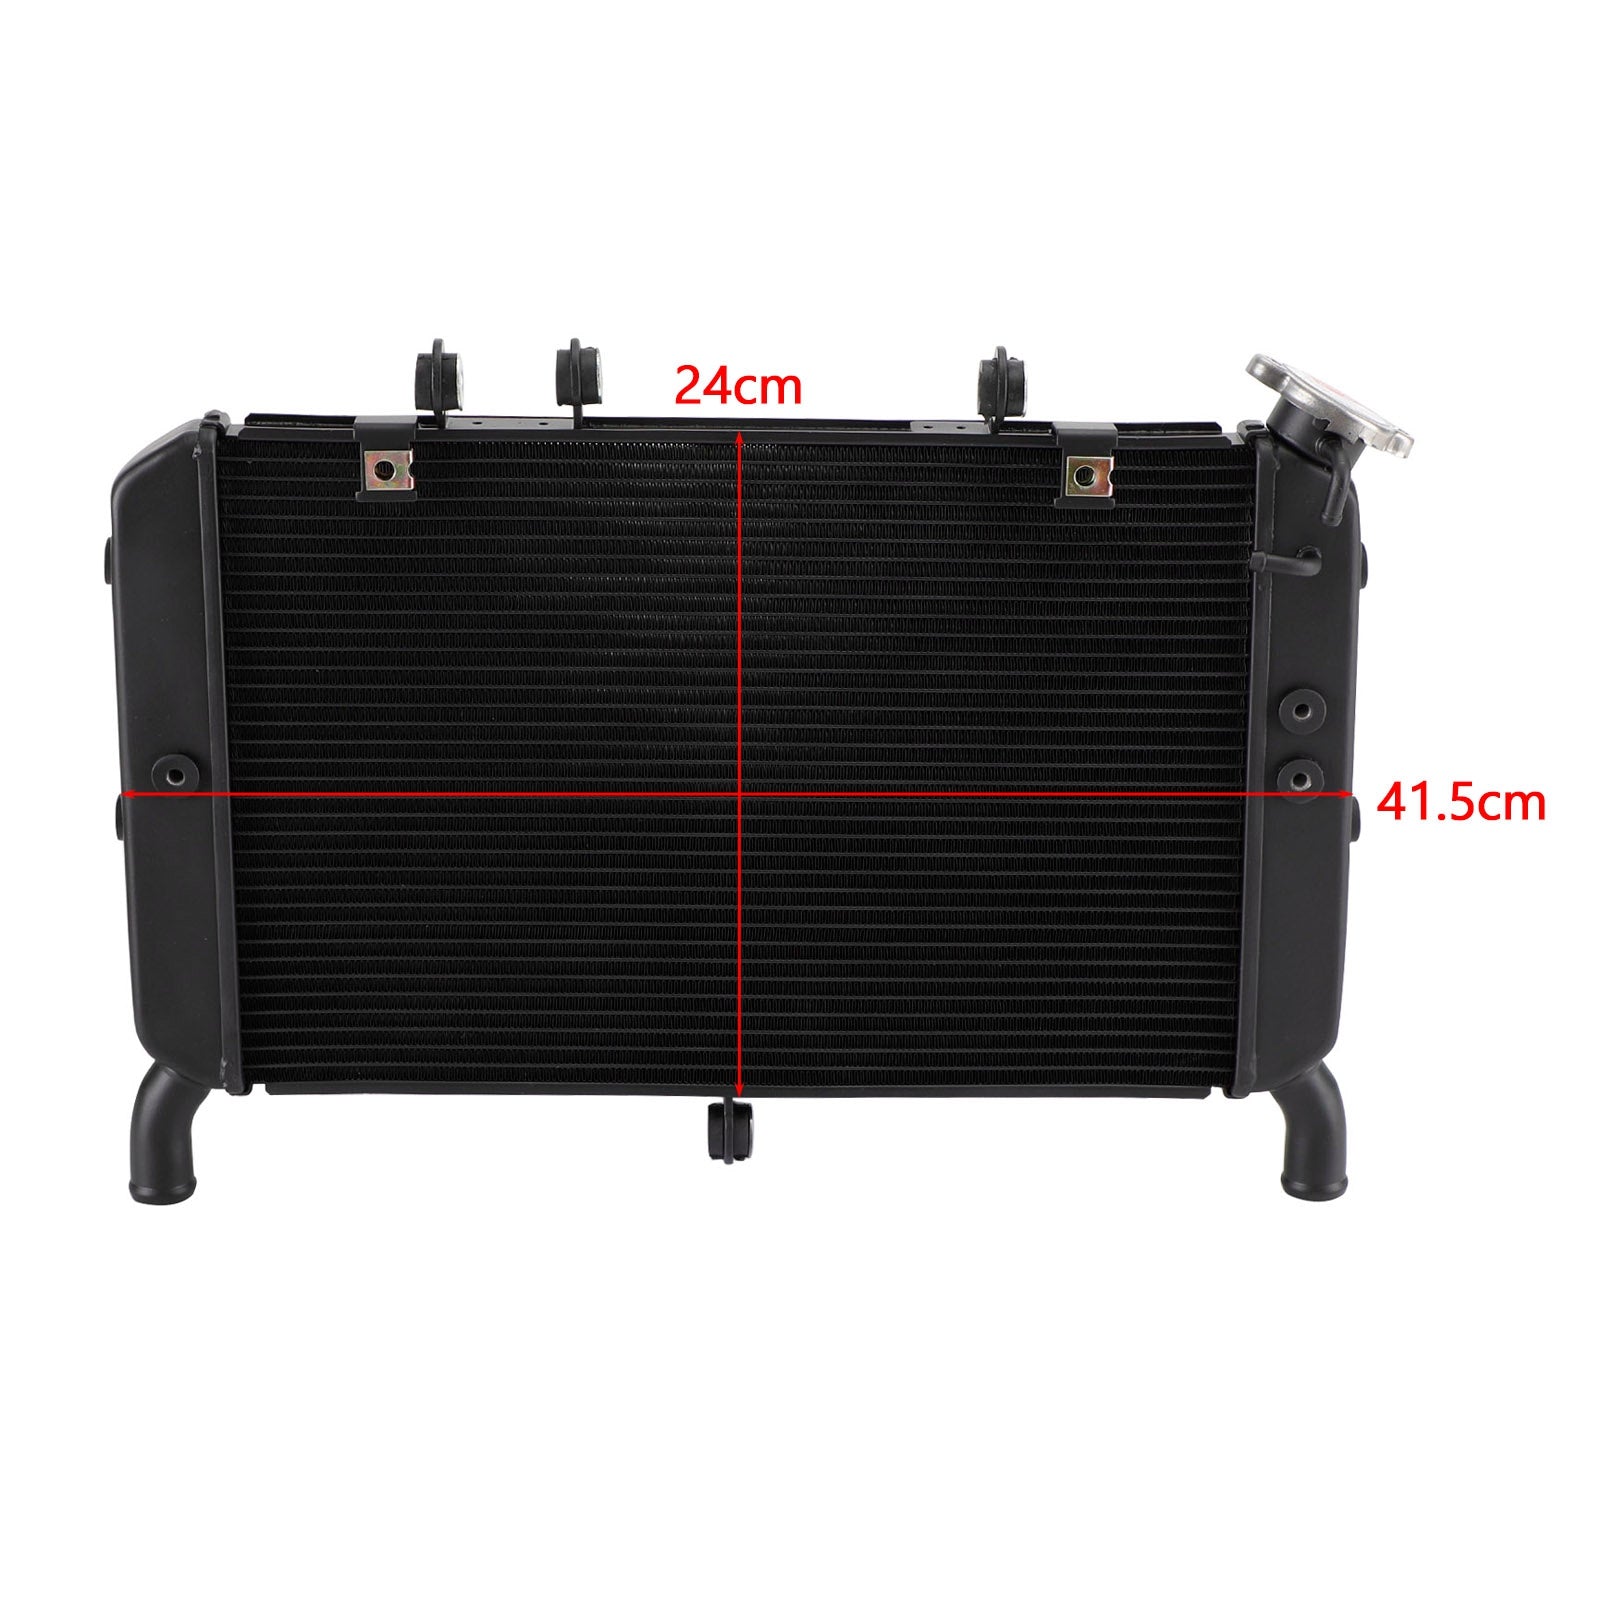 Refroidisseur de radiateur de refroidissement pour Yamaha FZ09 MT09 MT-09 2014-20 TRACER 900 19-20